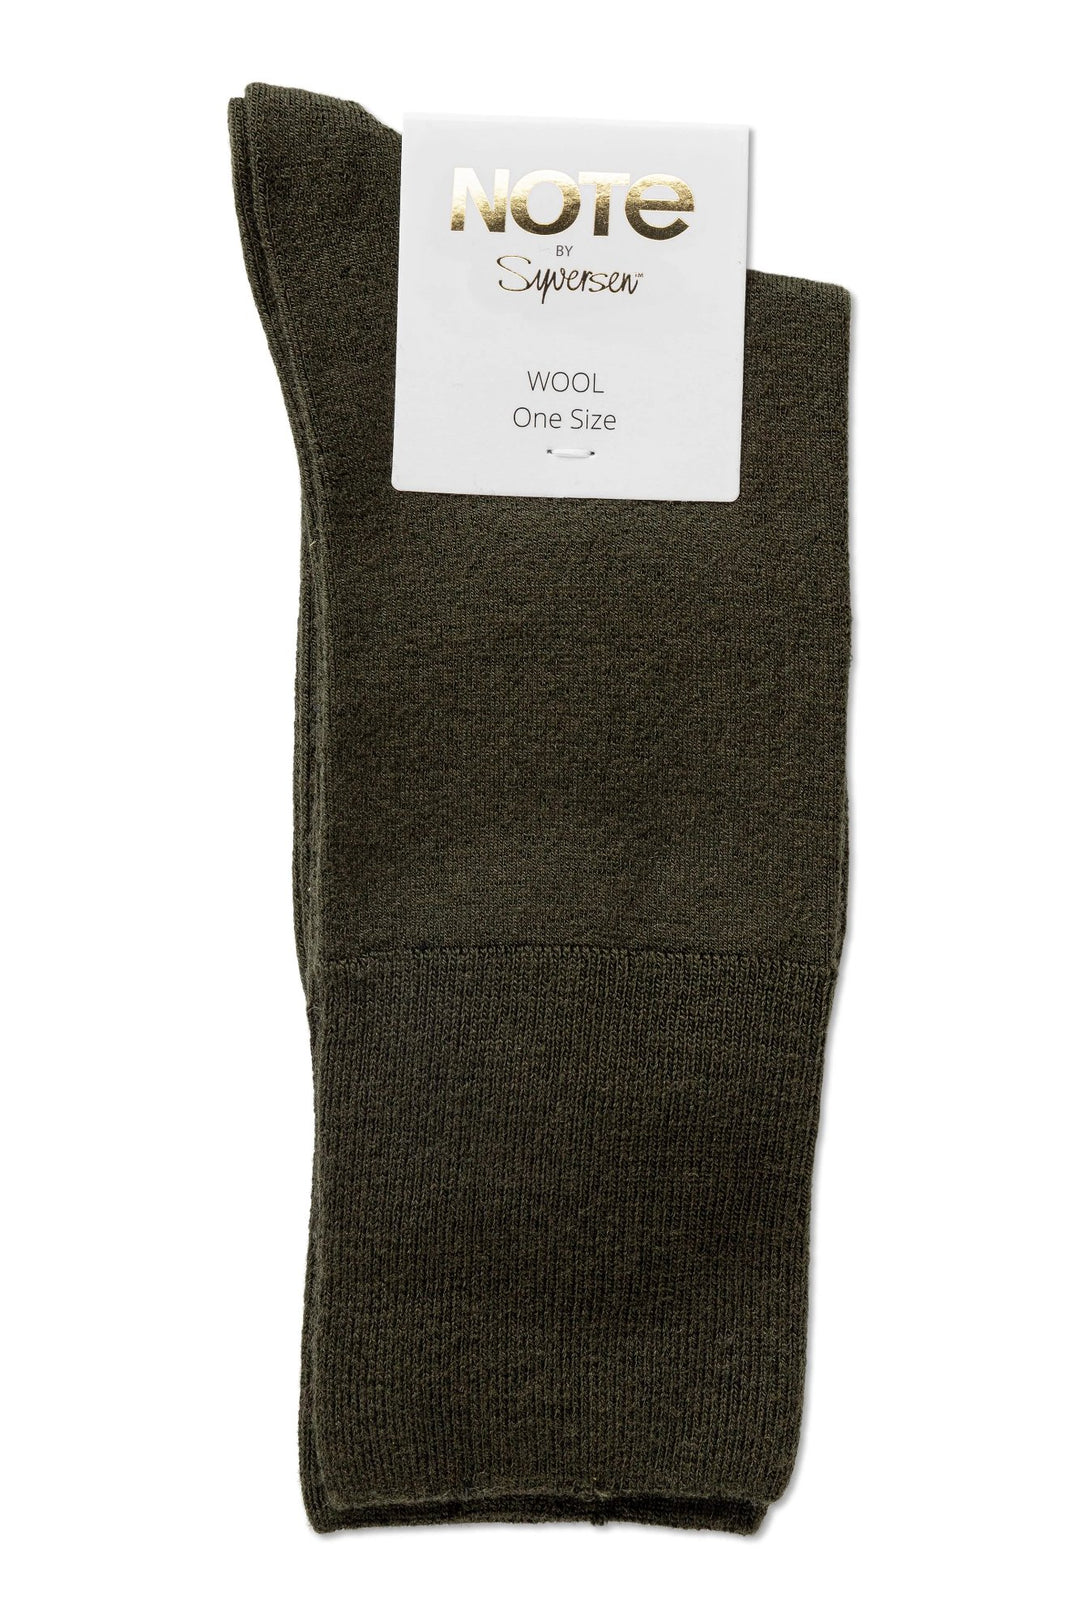 Uldstrømper | Note by Syversen Fine wool comfort top, olive